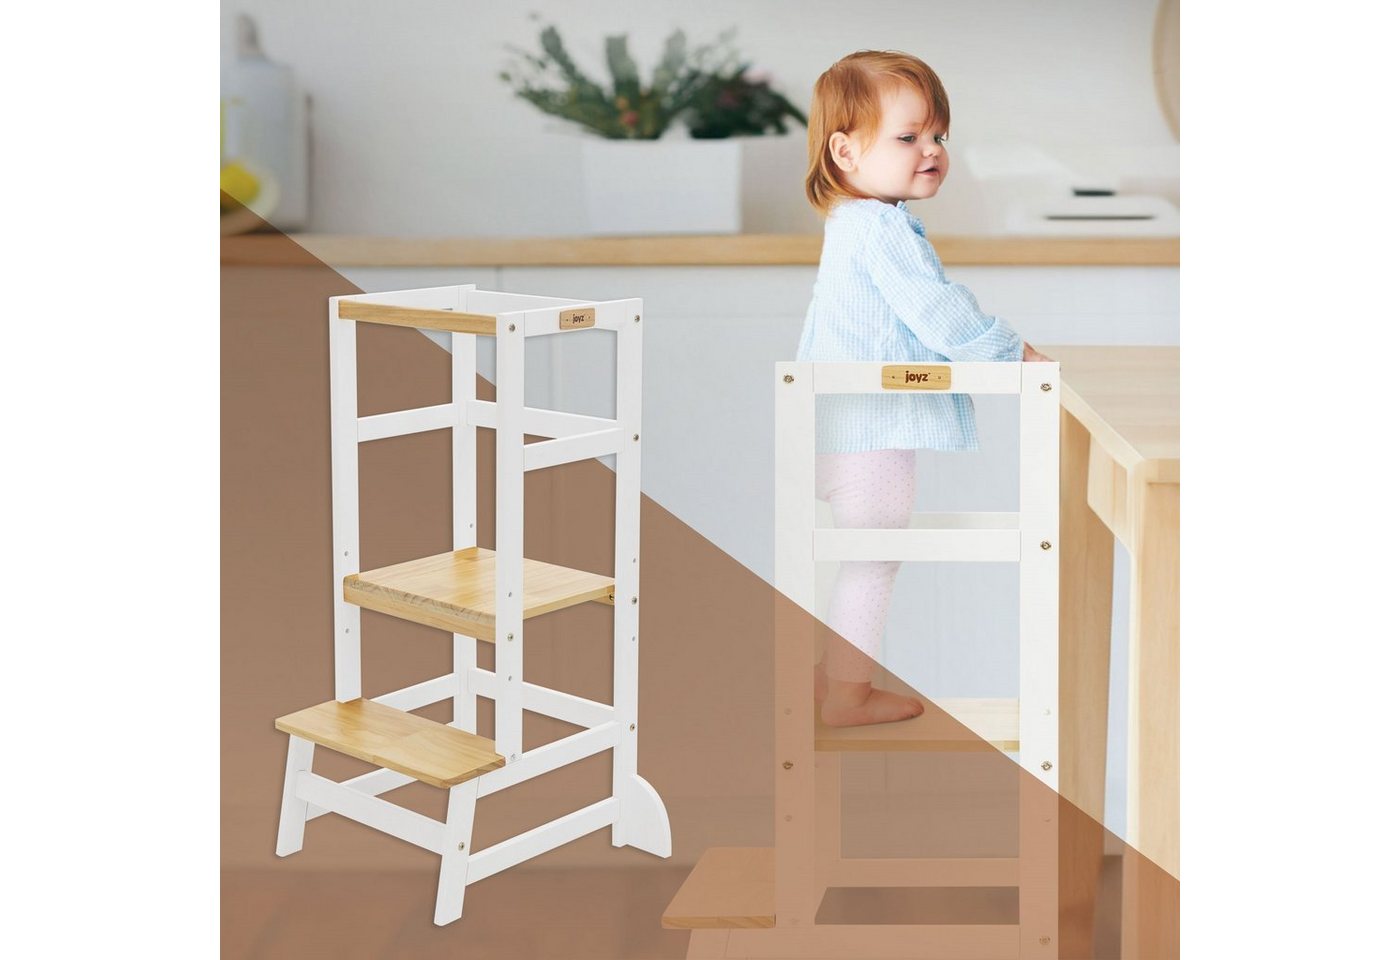 Joyz Kinderstuhl Montessori Lerntower für Kinder aus Holz Verwandelbar Kinderstuhl, Küchenhelfer Weiß/Natur mit Schutzstab und 2 Stufen 54x44x90cm von Joyz